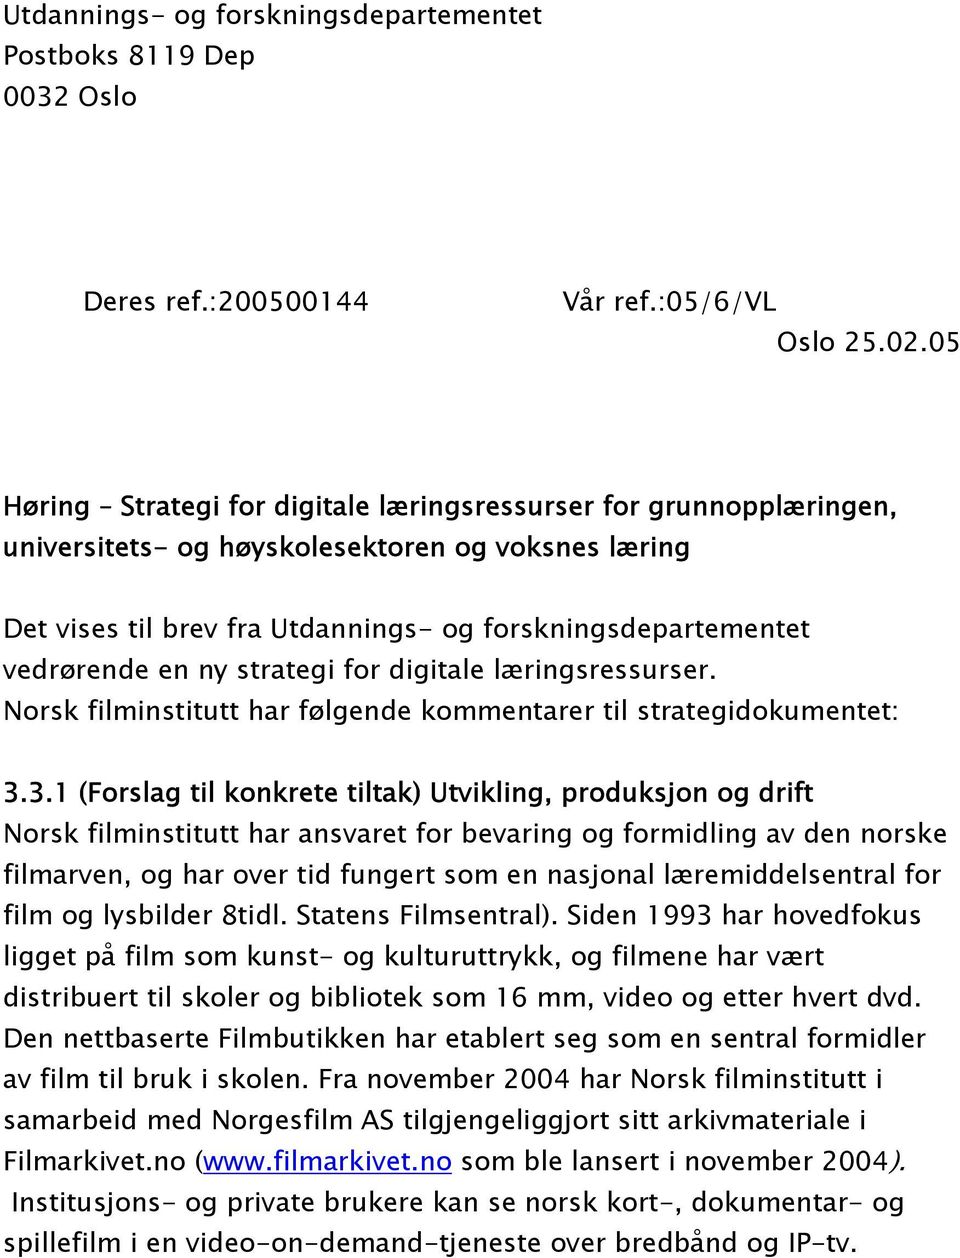 ny strategi for digitale læringsressurser. Norsk filminstitutt har følgende kommentarer til strategidokumentet: 3.